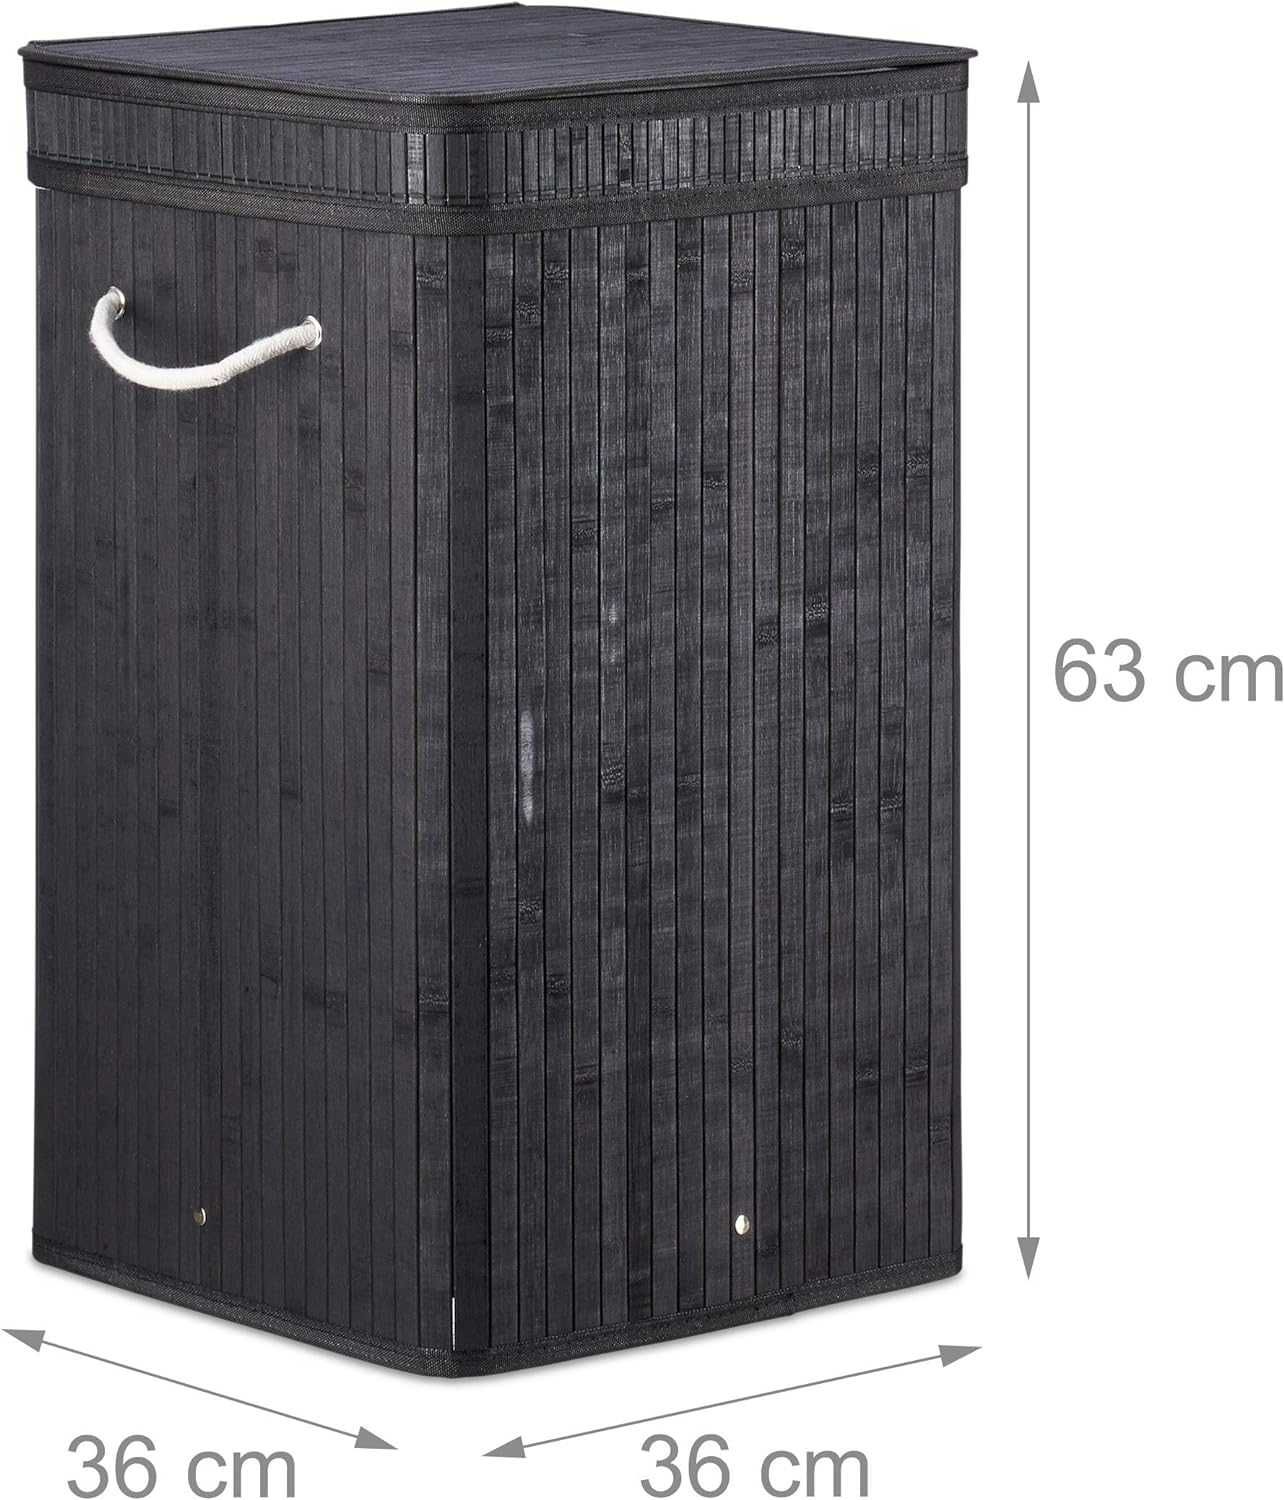 3R51 -50% czarny kosz na pranie bambusowy z wkładem bambus 70L loft